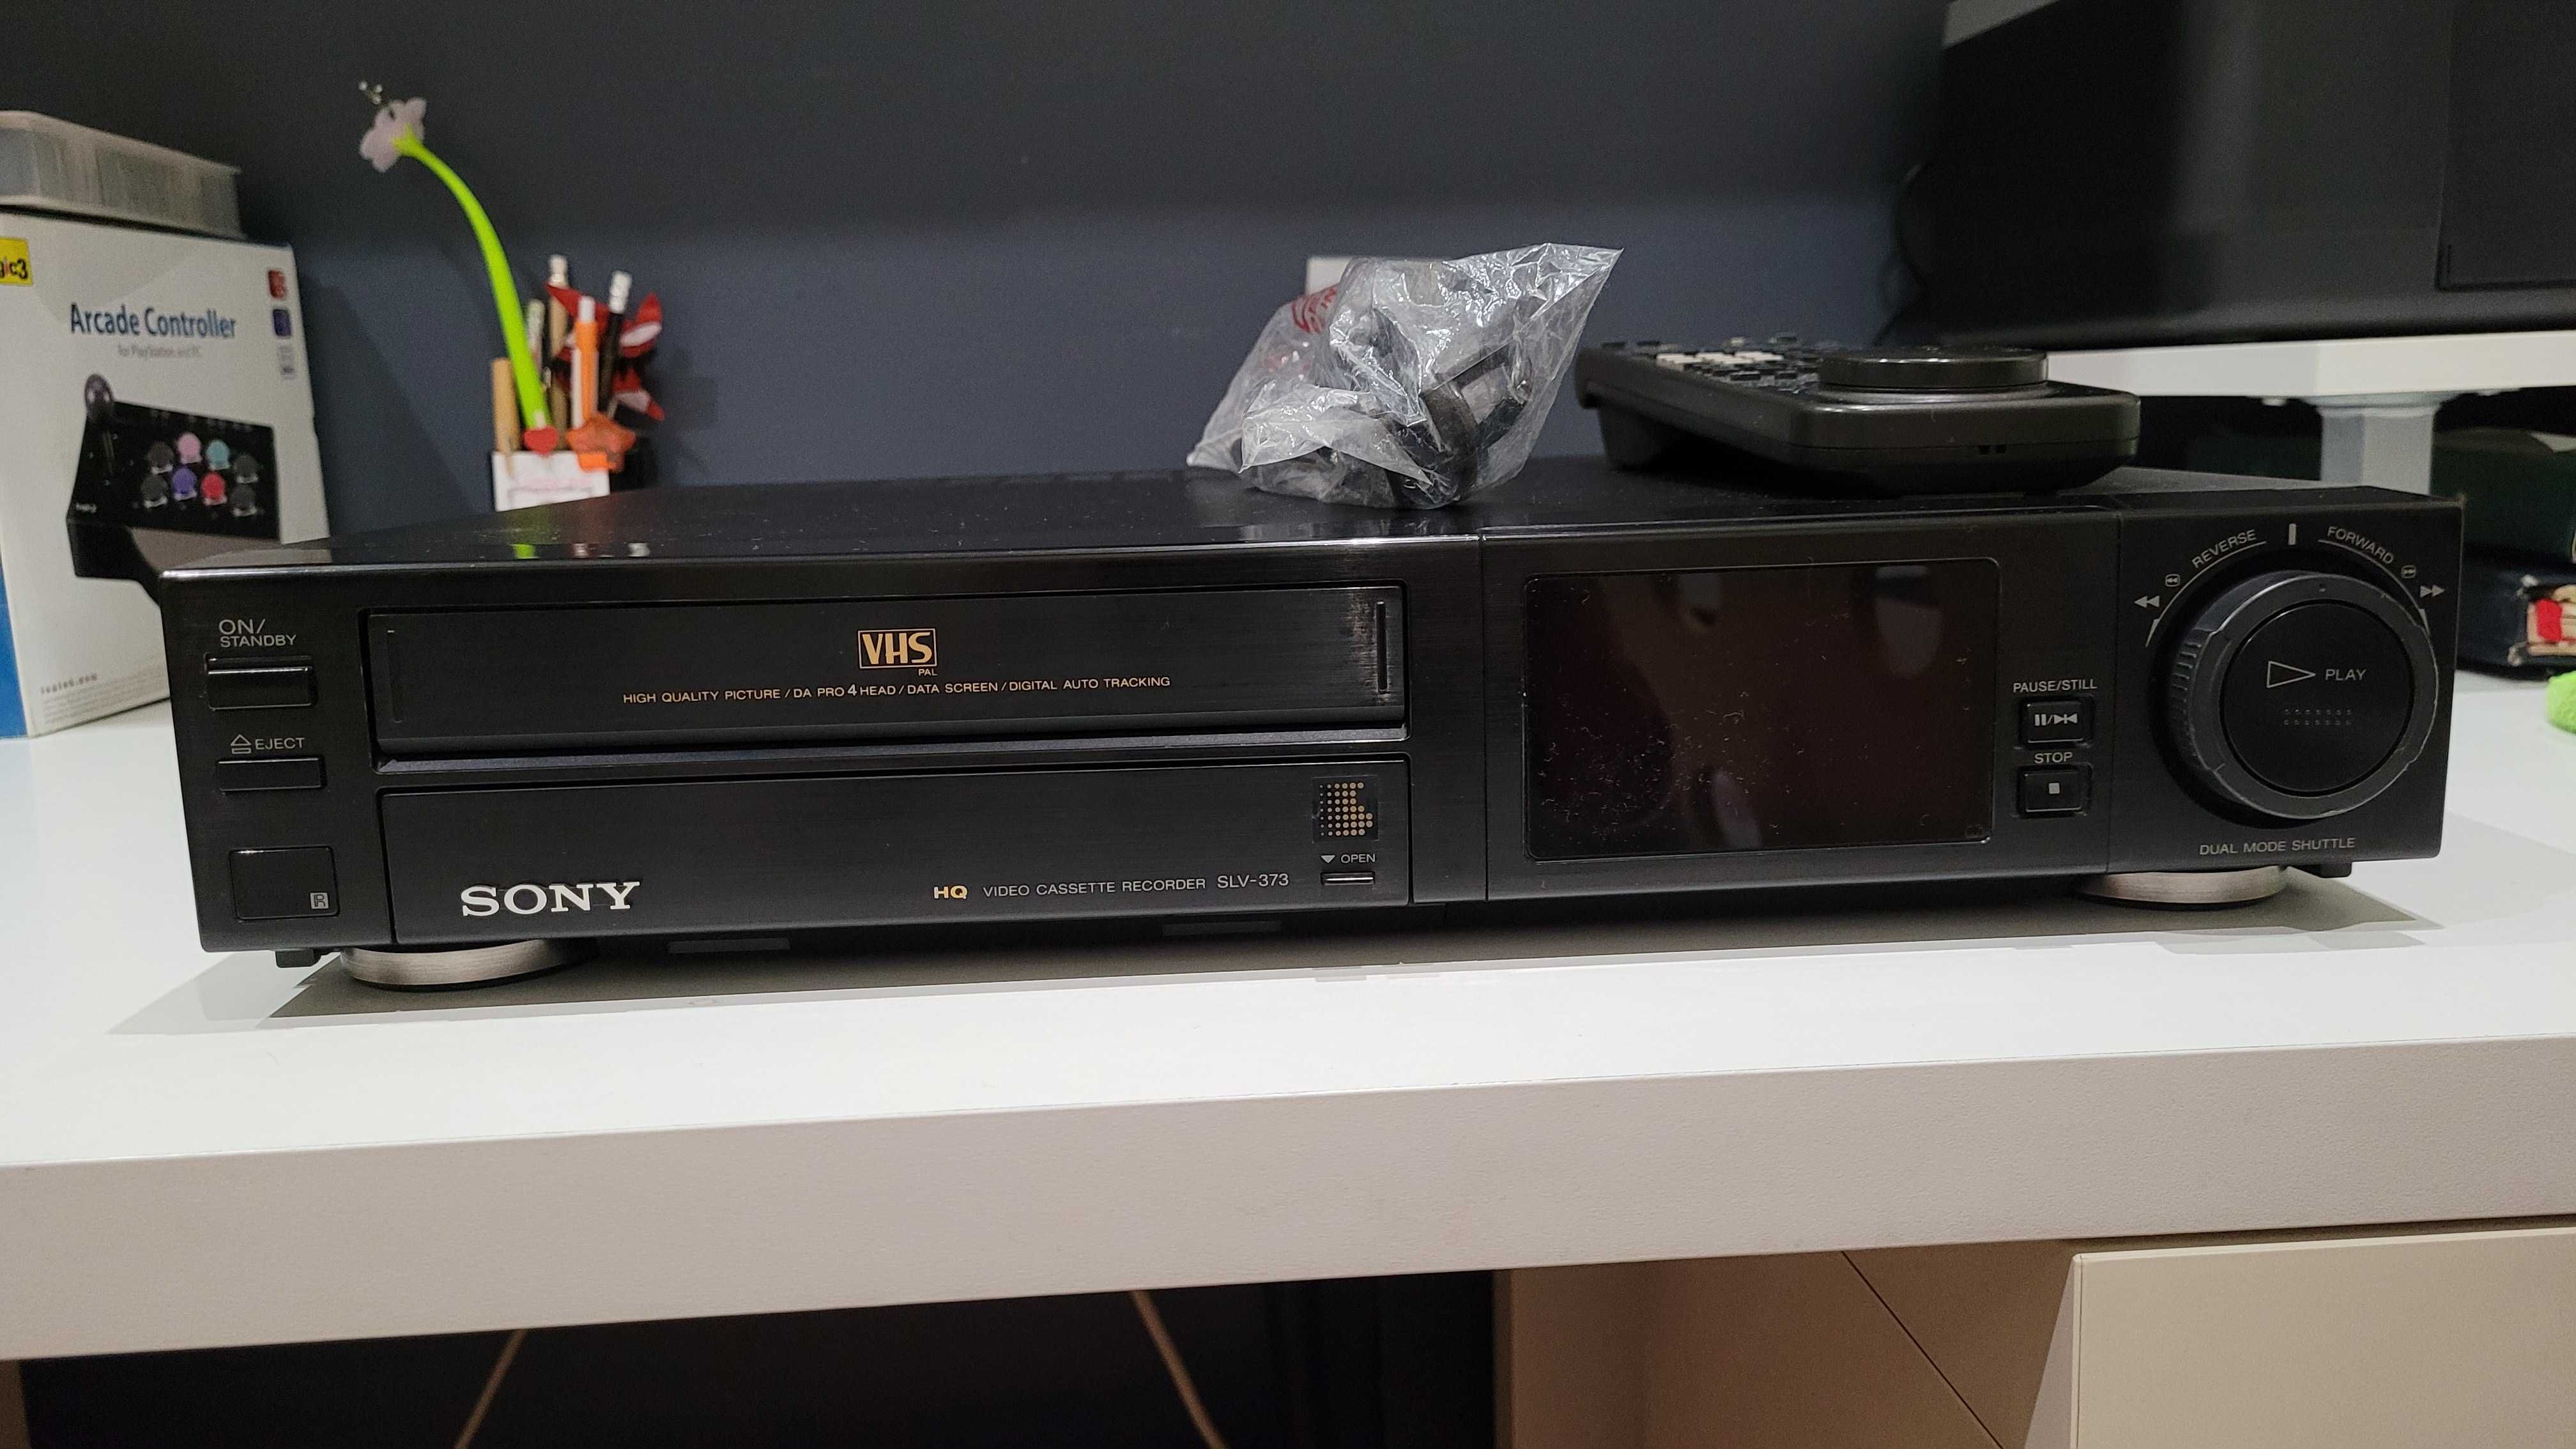 Sony Video Cassette Recorder SLV-373